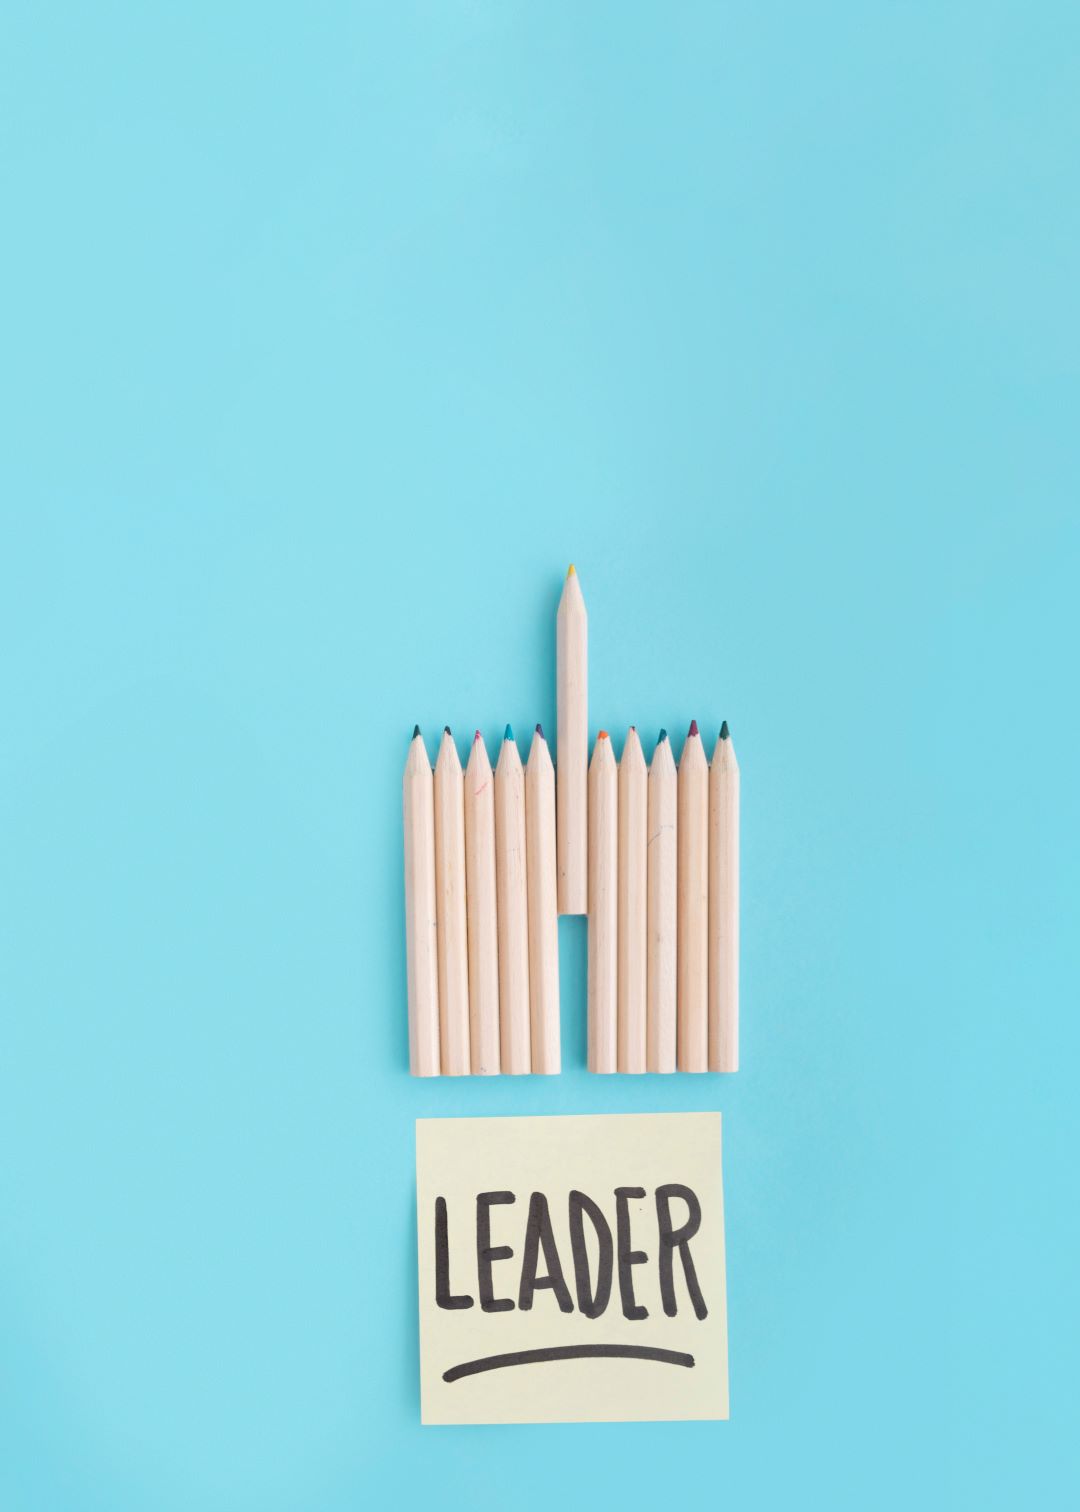 Leadership Qualities depicted here